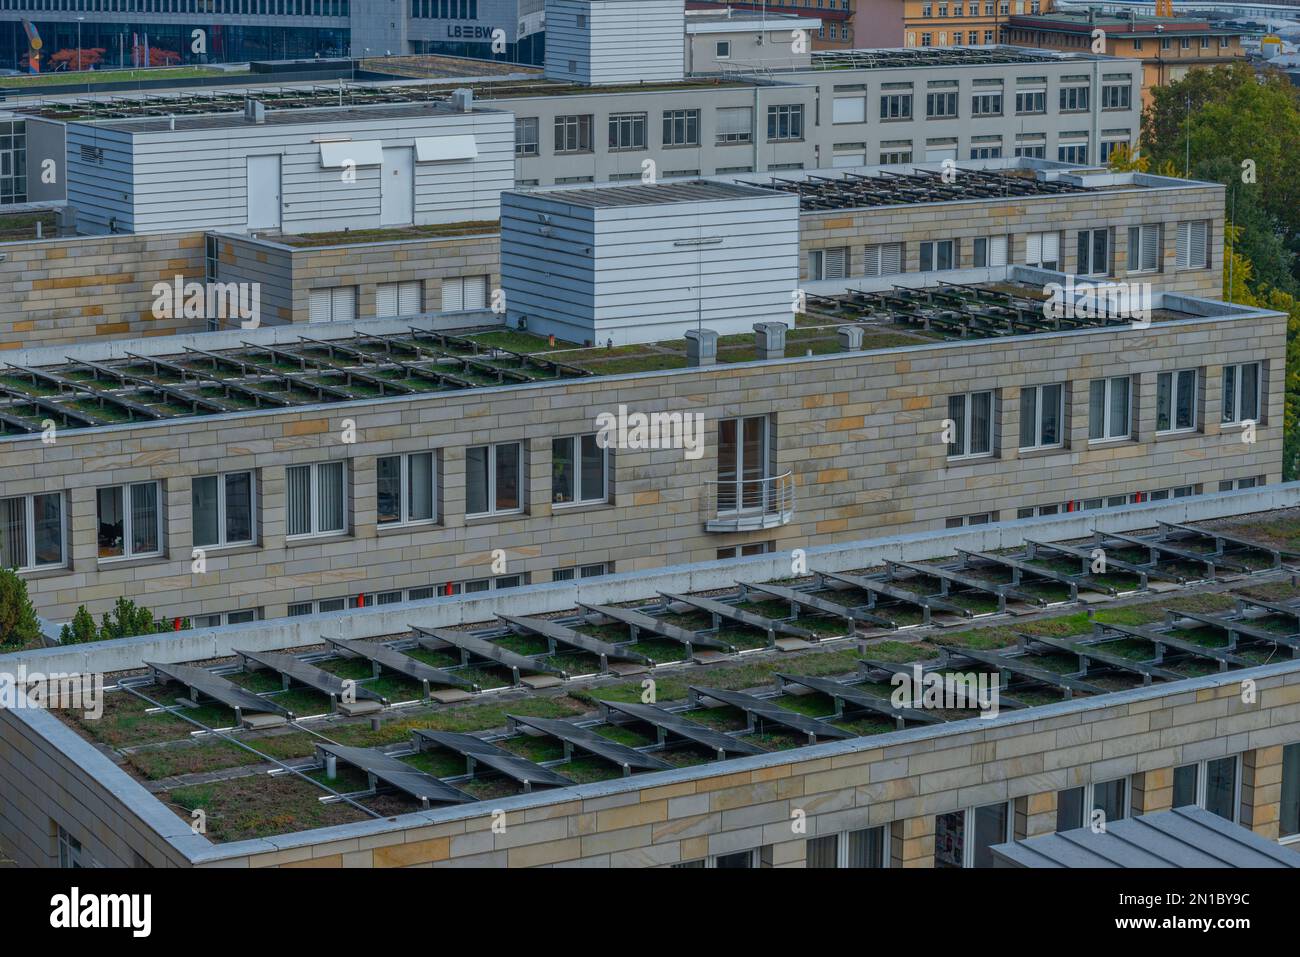 Paneles solares en edificio de techo plano, producción de energía respetuosa con el medio ambiente, energía, Stuttgart, Baden-Württemberg, sur de Alemania Foto de stock